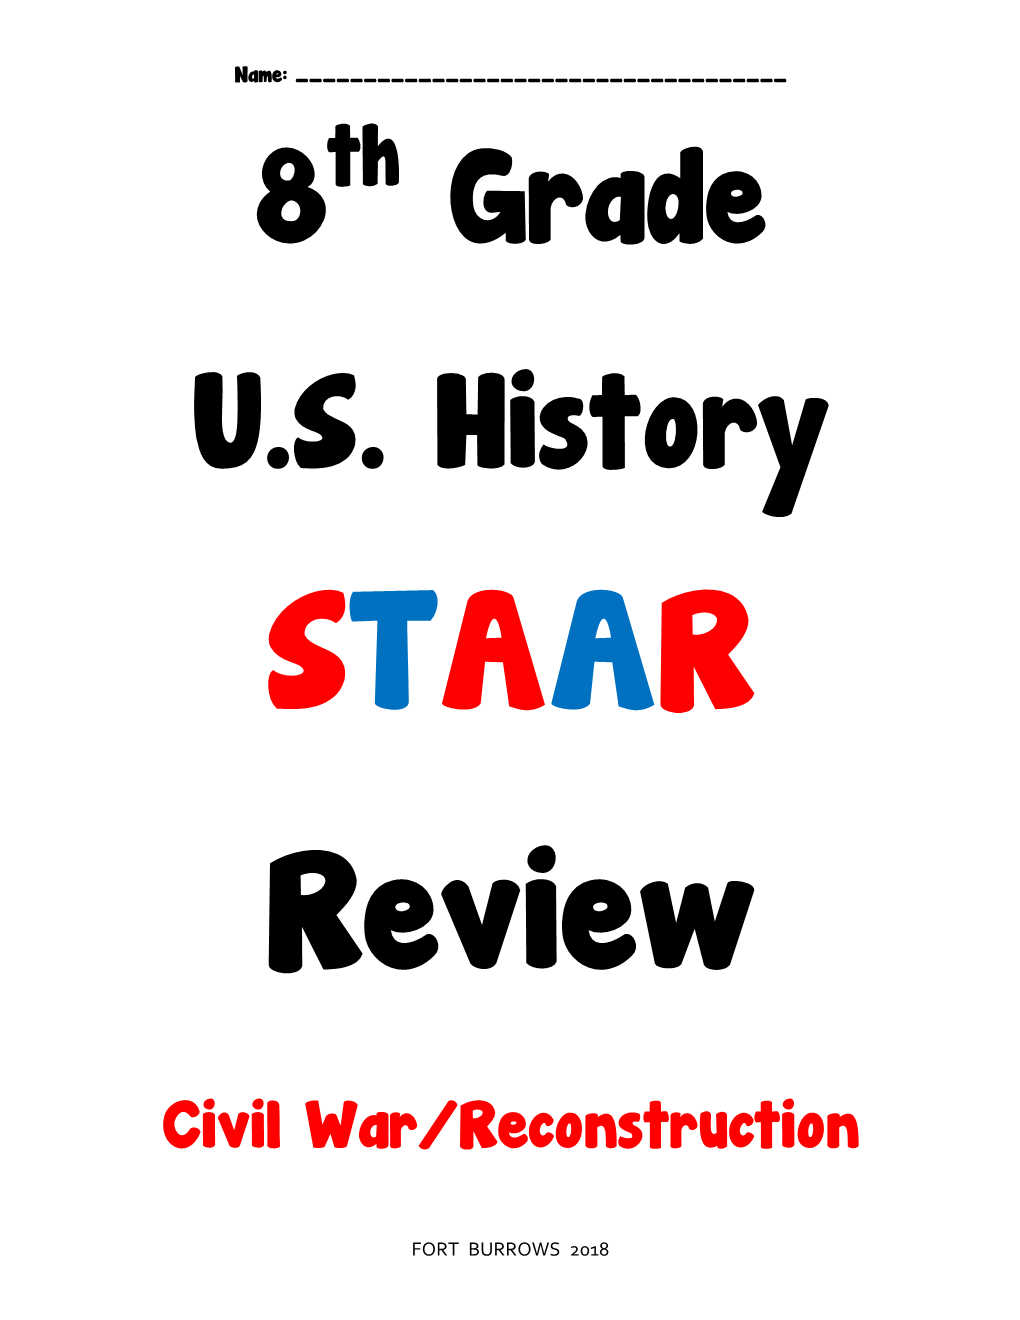 Civil War/Reconstruction